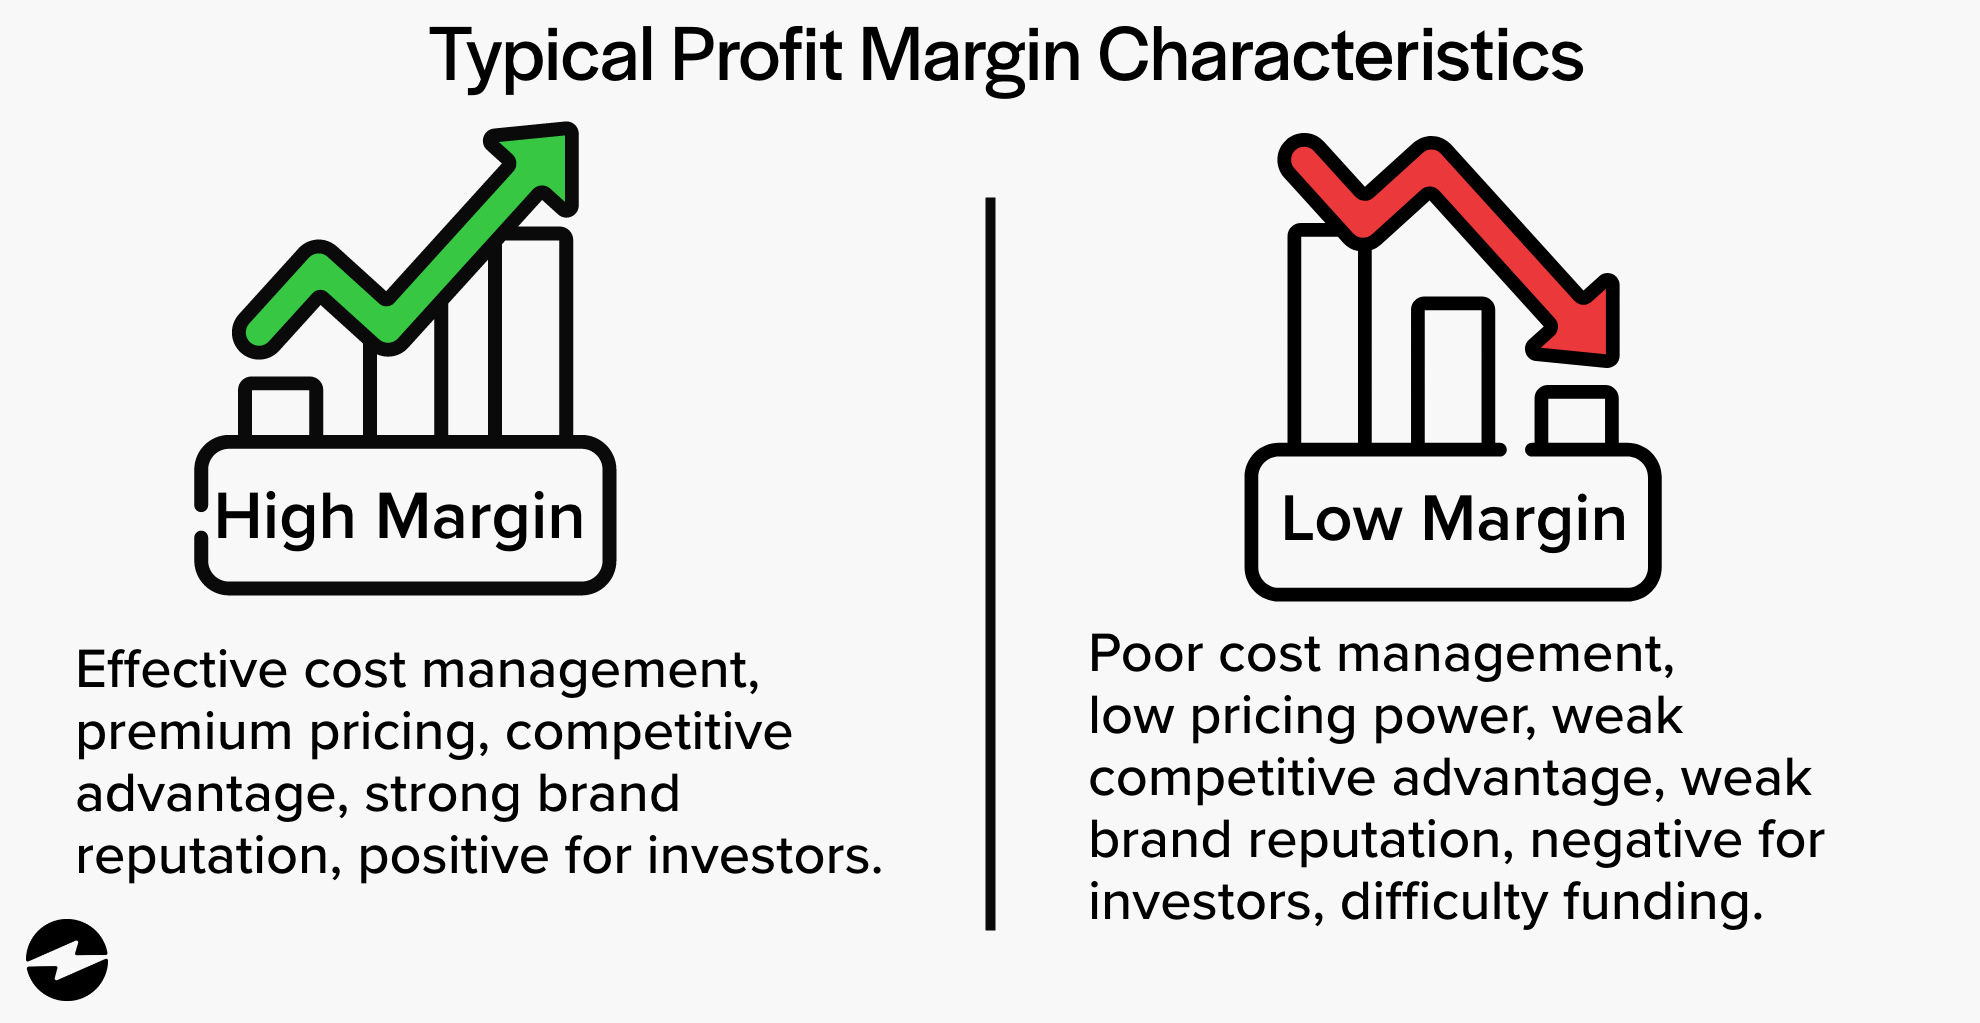 Typical Profit Margin characteristics